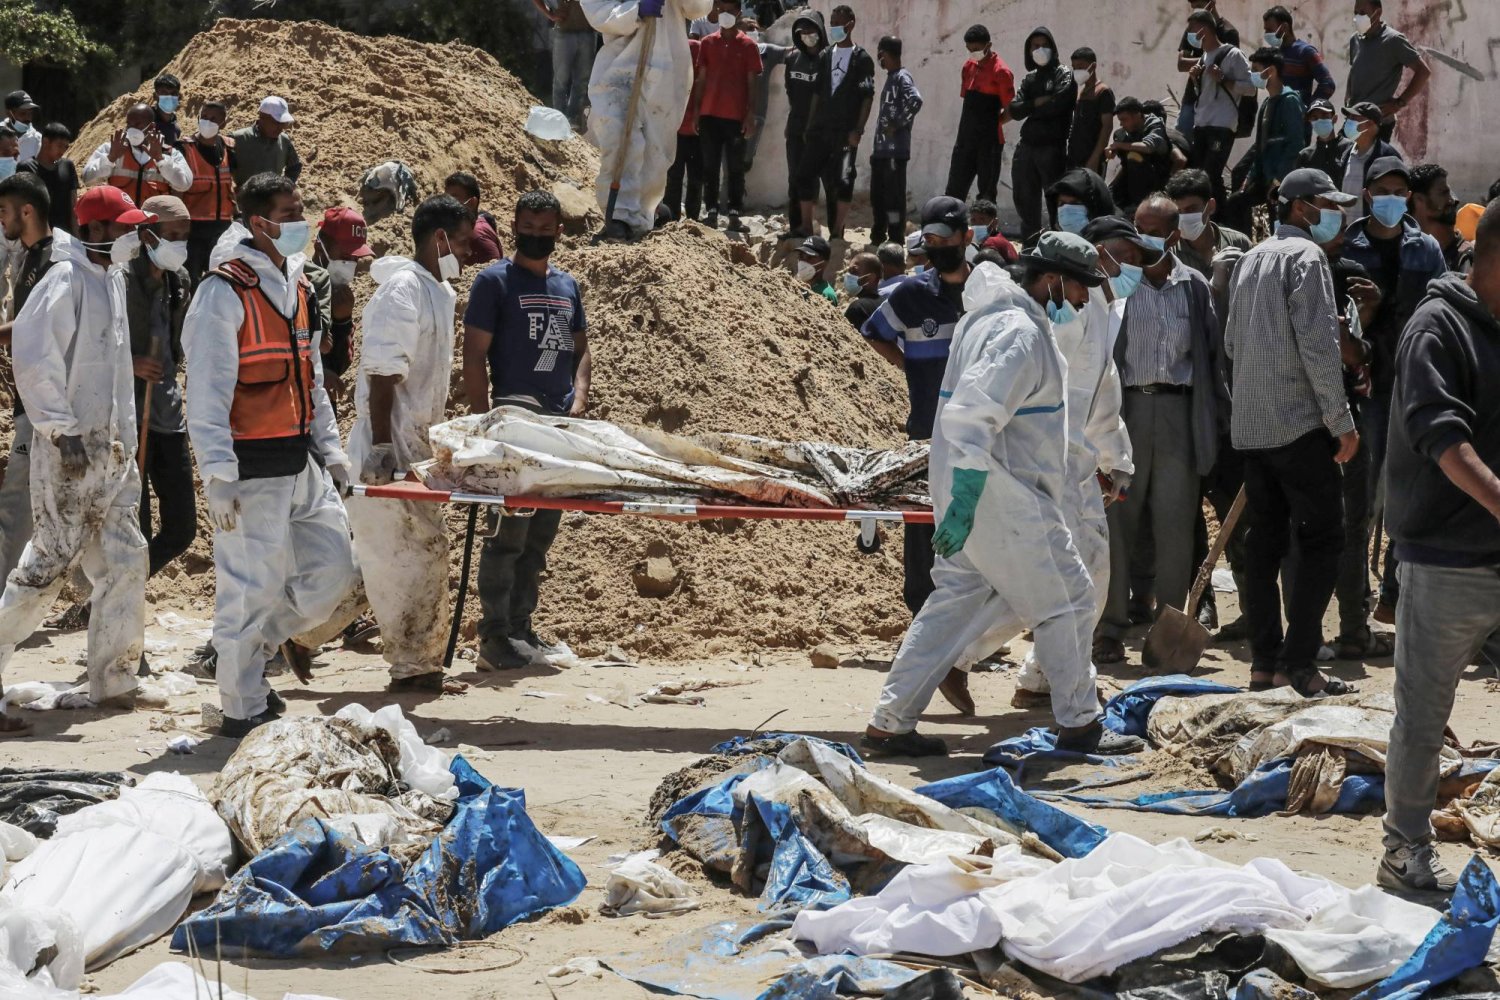 عاملون بالقطاع المدني الفلسطيني يحملون جثامين استُخرجت من مقابر جماعية يوم الأحد في «مجمع ناصر الطبي» بغزة (د.ب.أ)